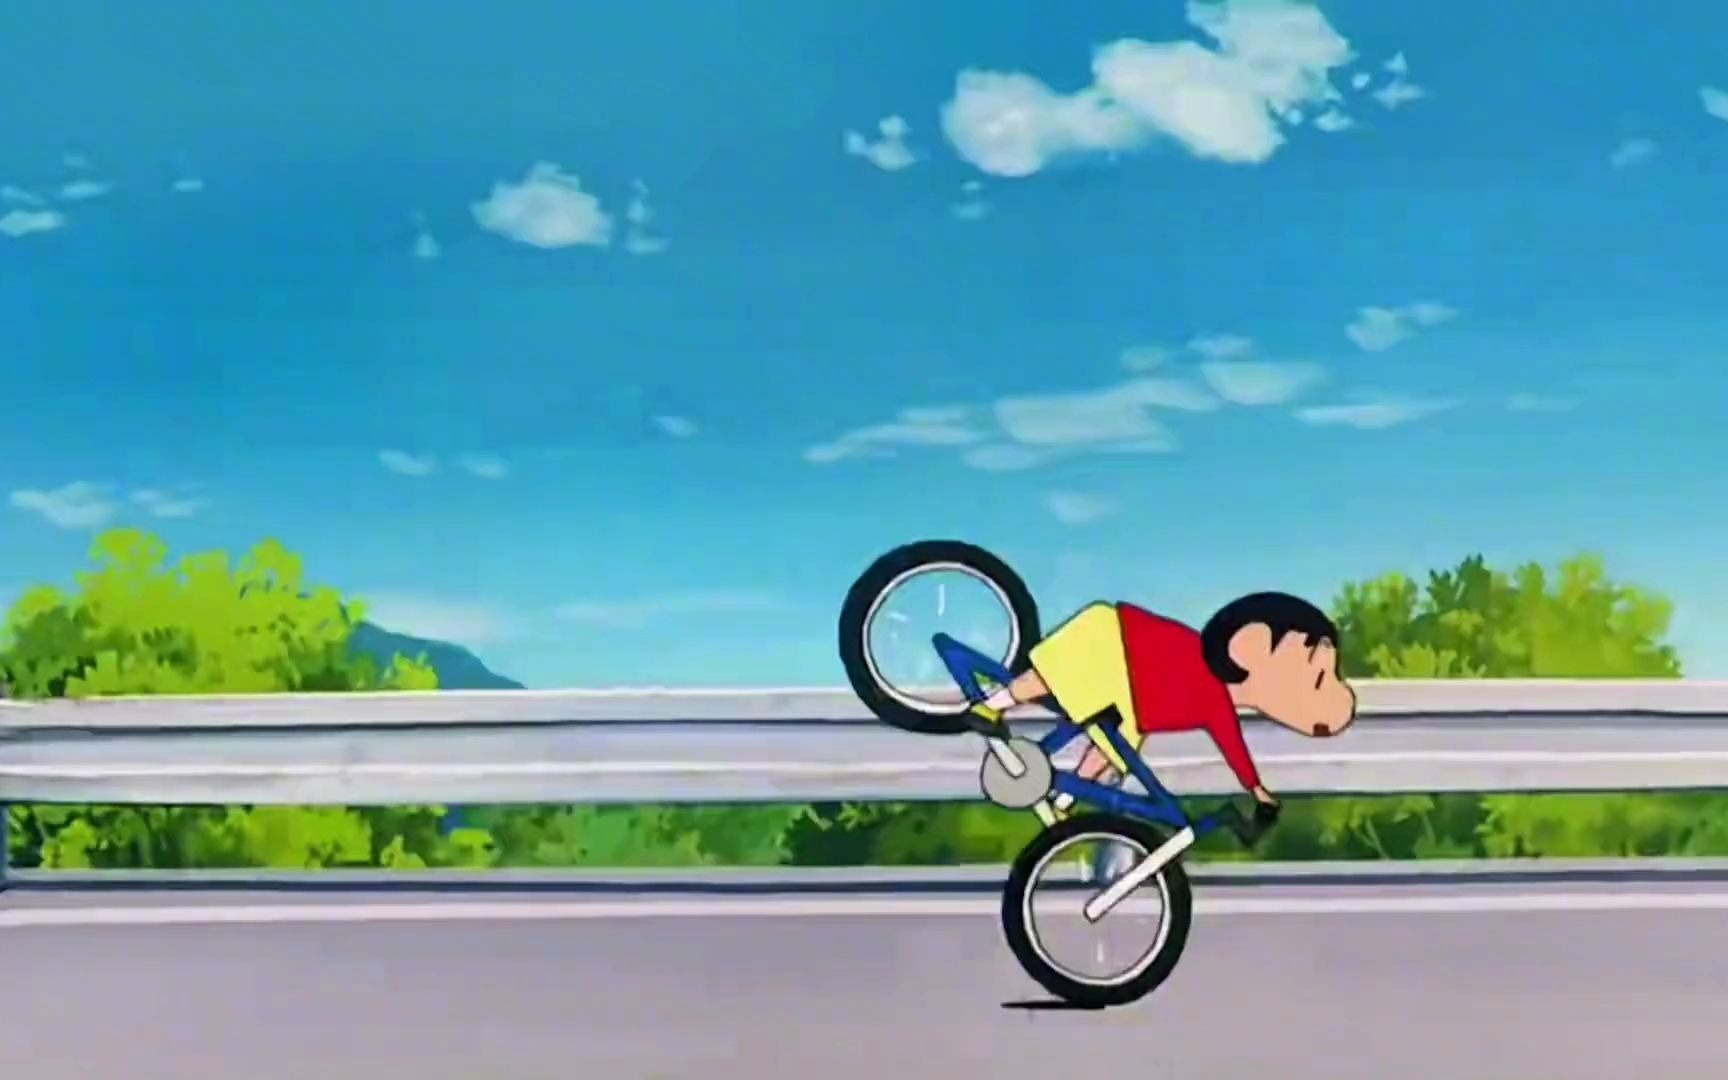 吗一个不会骑自行车的五岁小孩竟然将职业车手甩在身后…